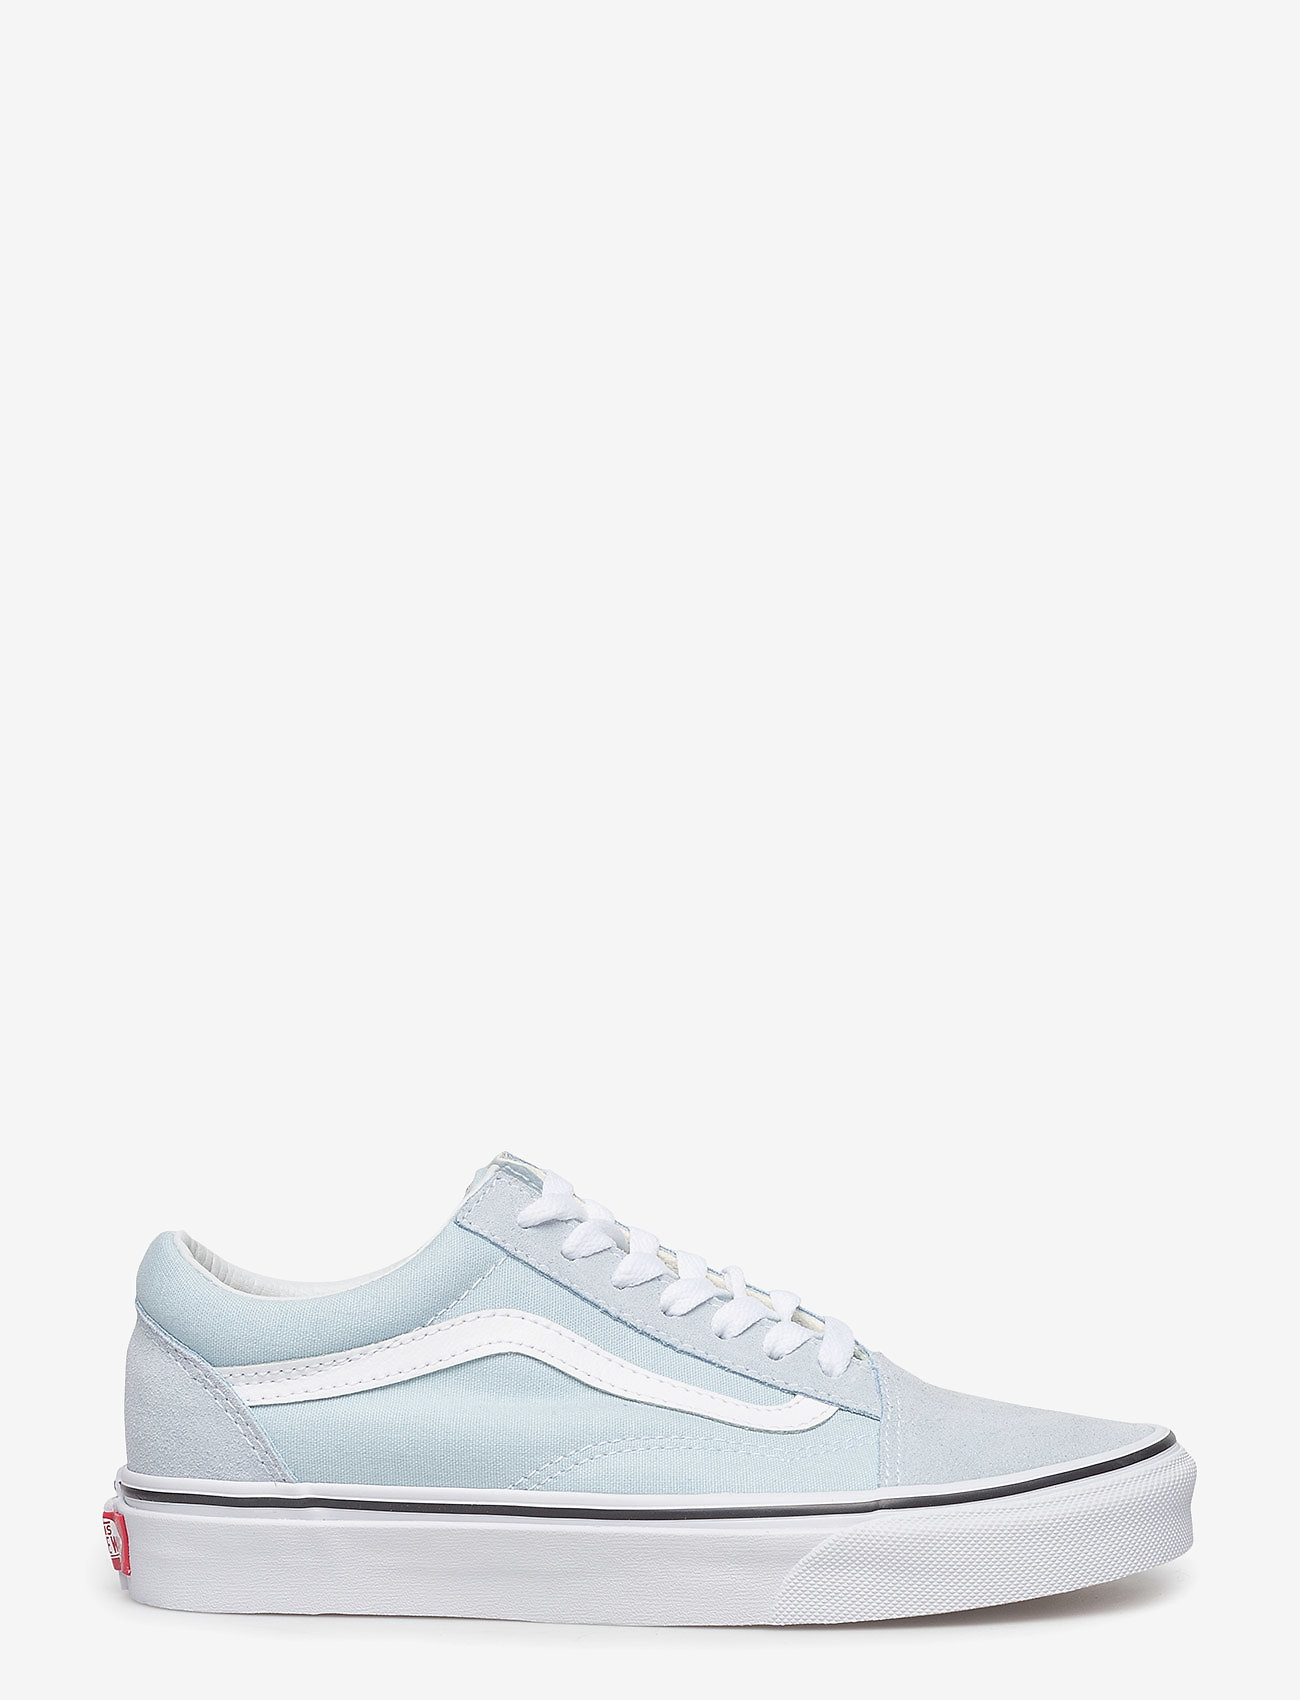 VANS - UA Old Skool - lave sneakers - baby blue/true white - 1